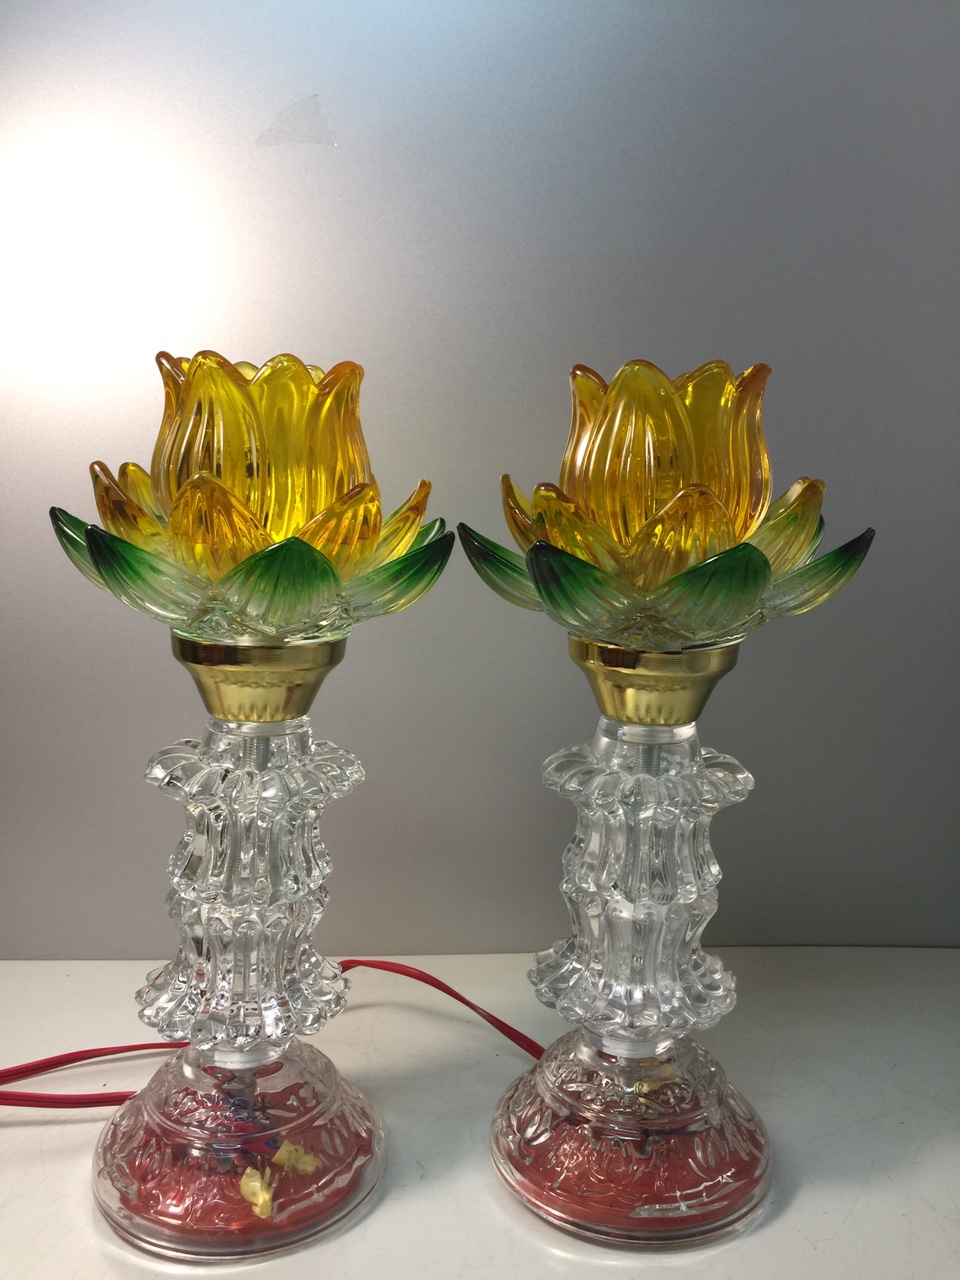 Đèn thờ hoa sen có lá xanh , bóng và thân đèn có đèn led , tiết kiệm điện, cao 28 cm